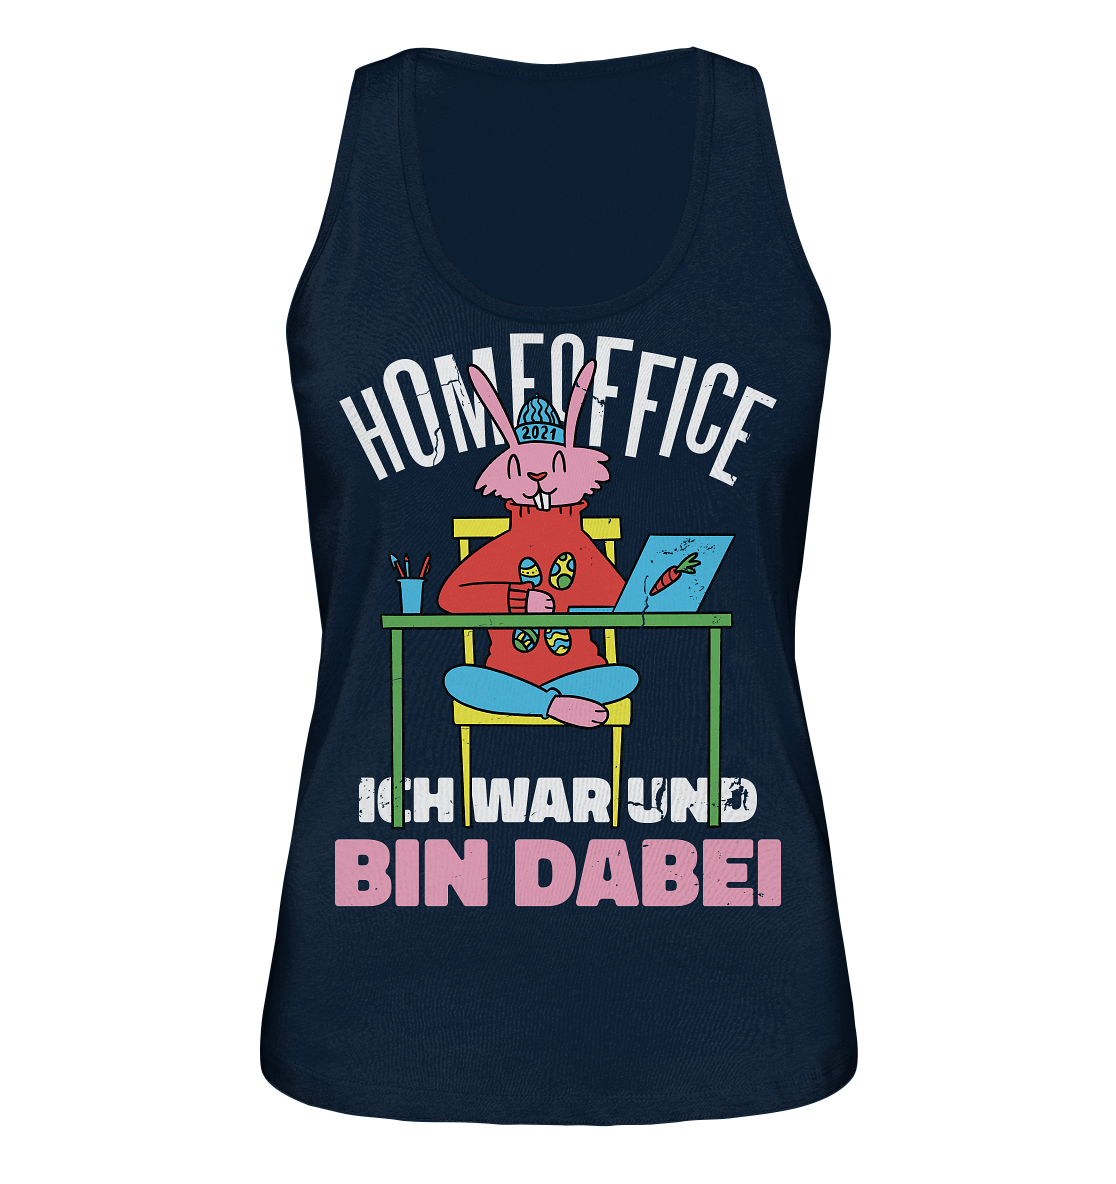 Homeoffice ich war und bin dabei - Ladies Organic Tank-Top - Damen Shirt - Online Kaufhaus München